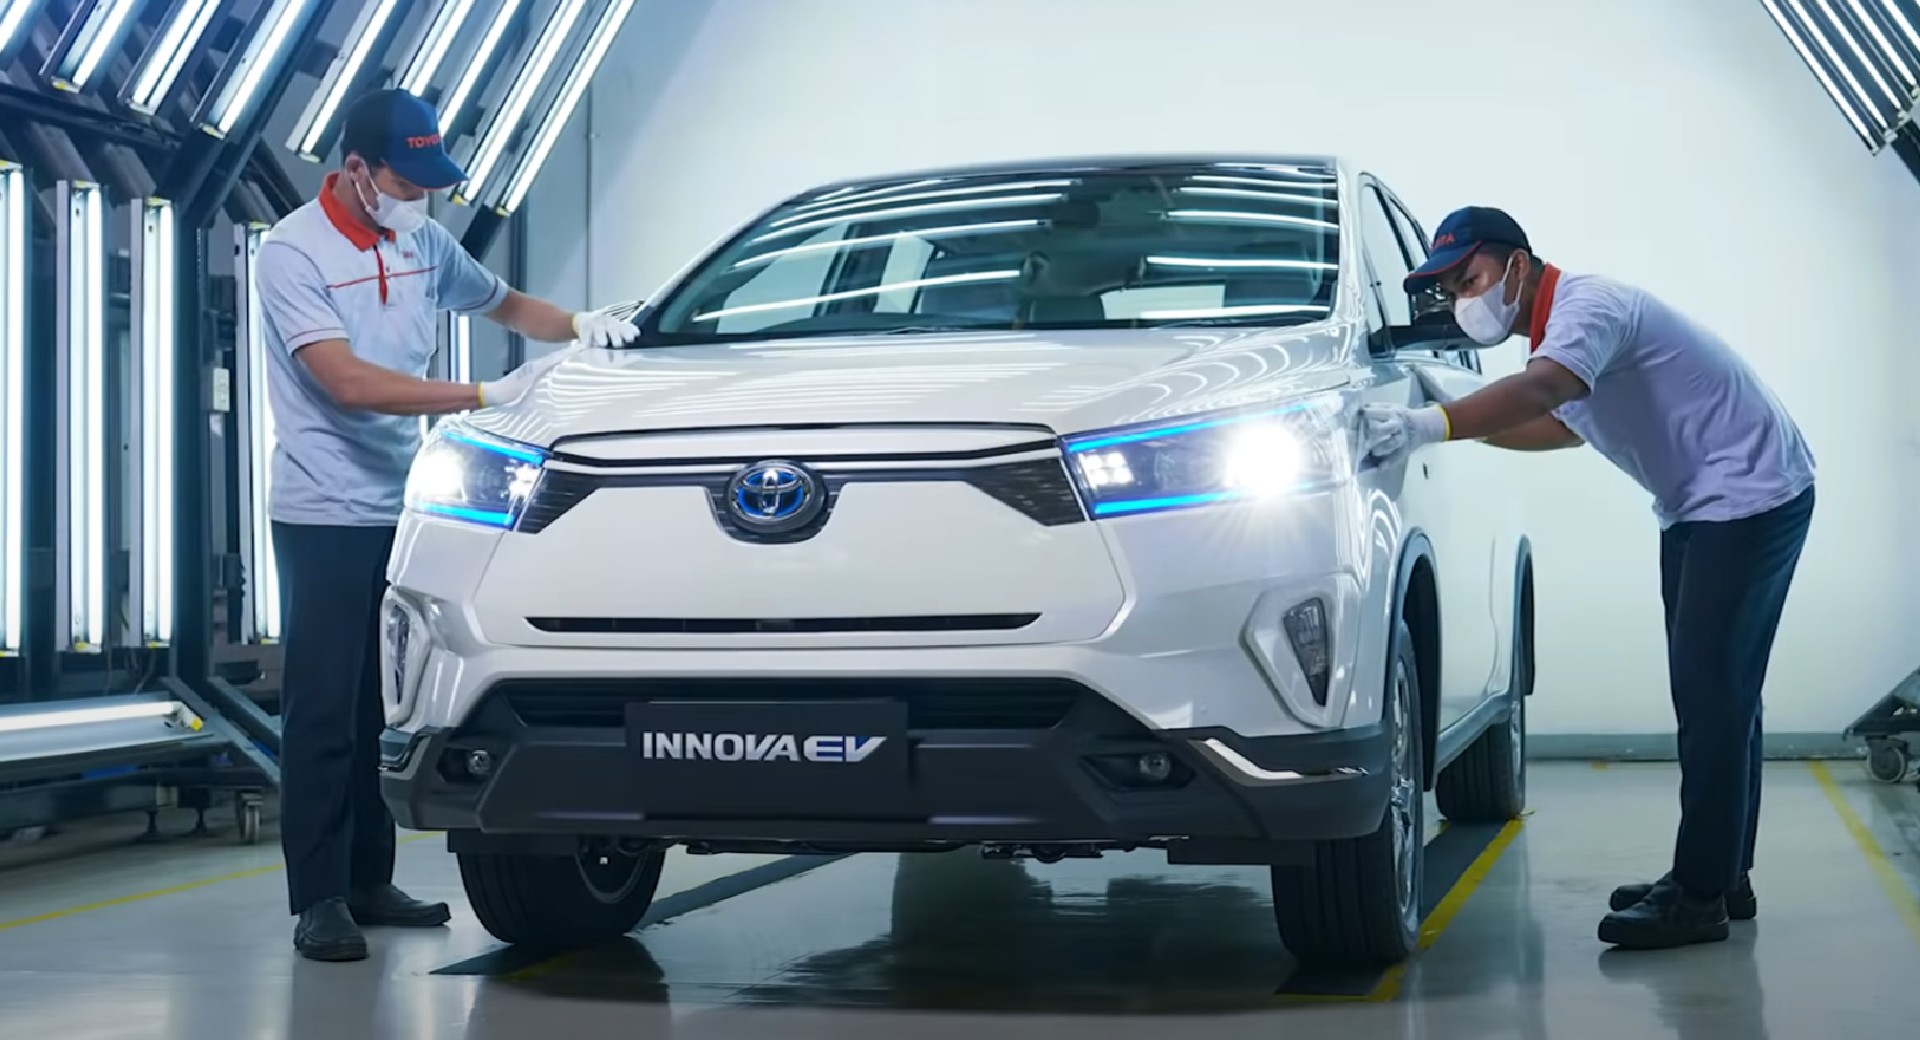 Thêm thông tin về Toyota Innova EV: Cơ hội đi vào sản xuất hàng loạt còn bỏ ngỏ - Ảnh 1.